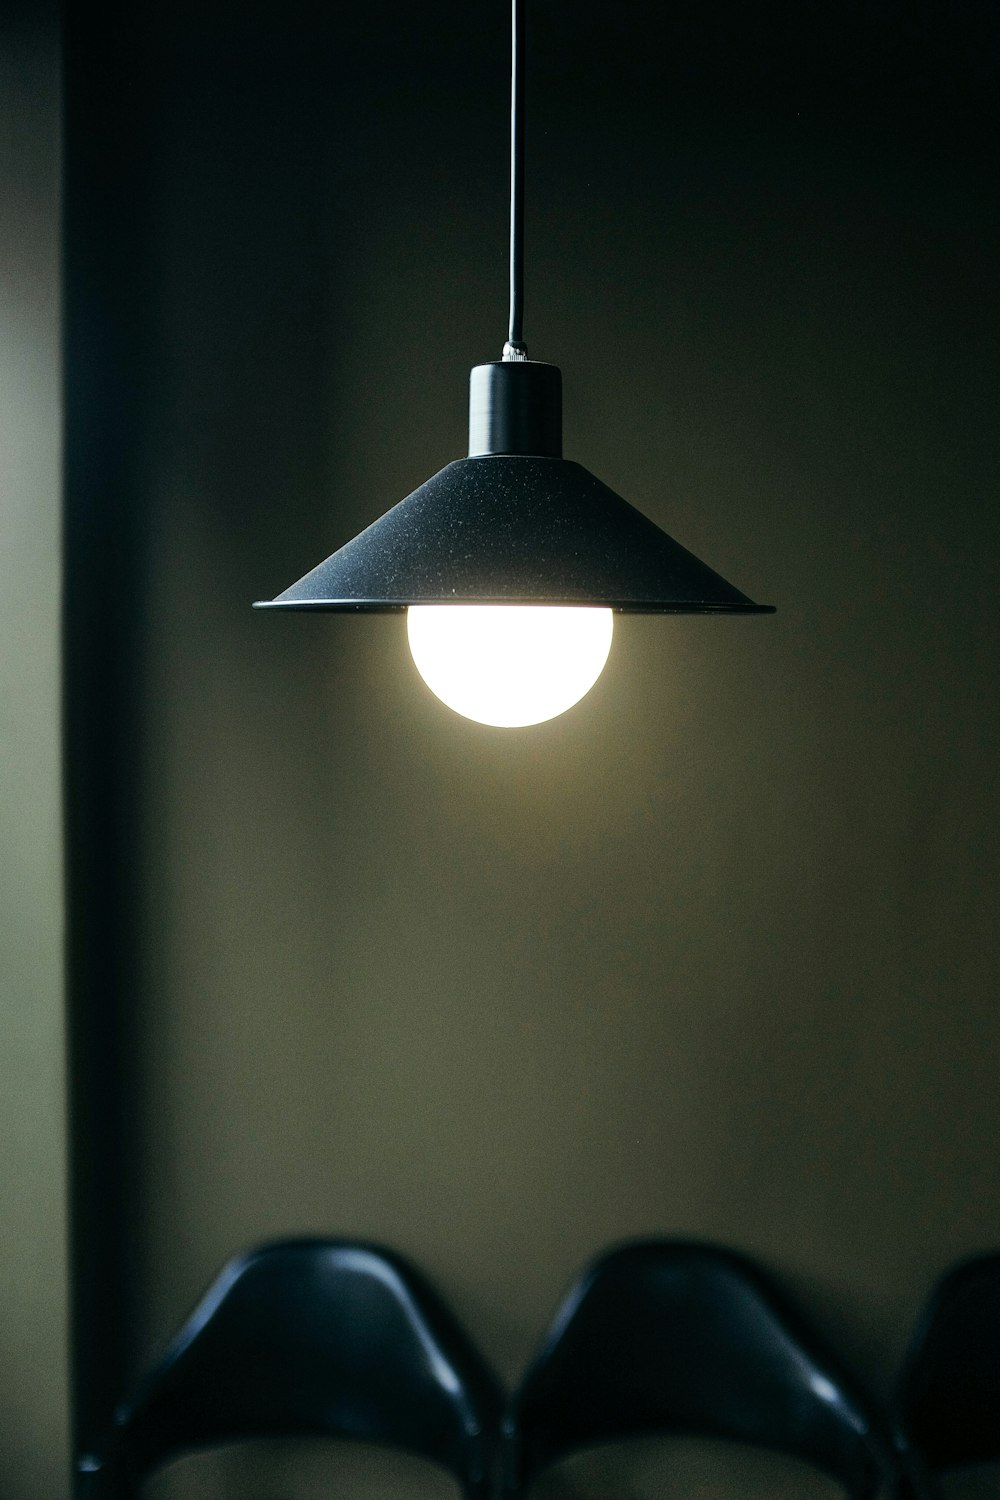 lampada a sospensione nera accesa in camera